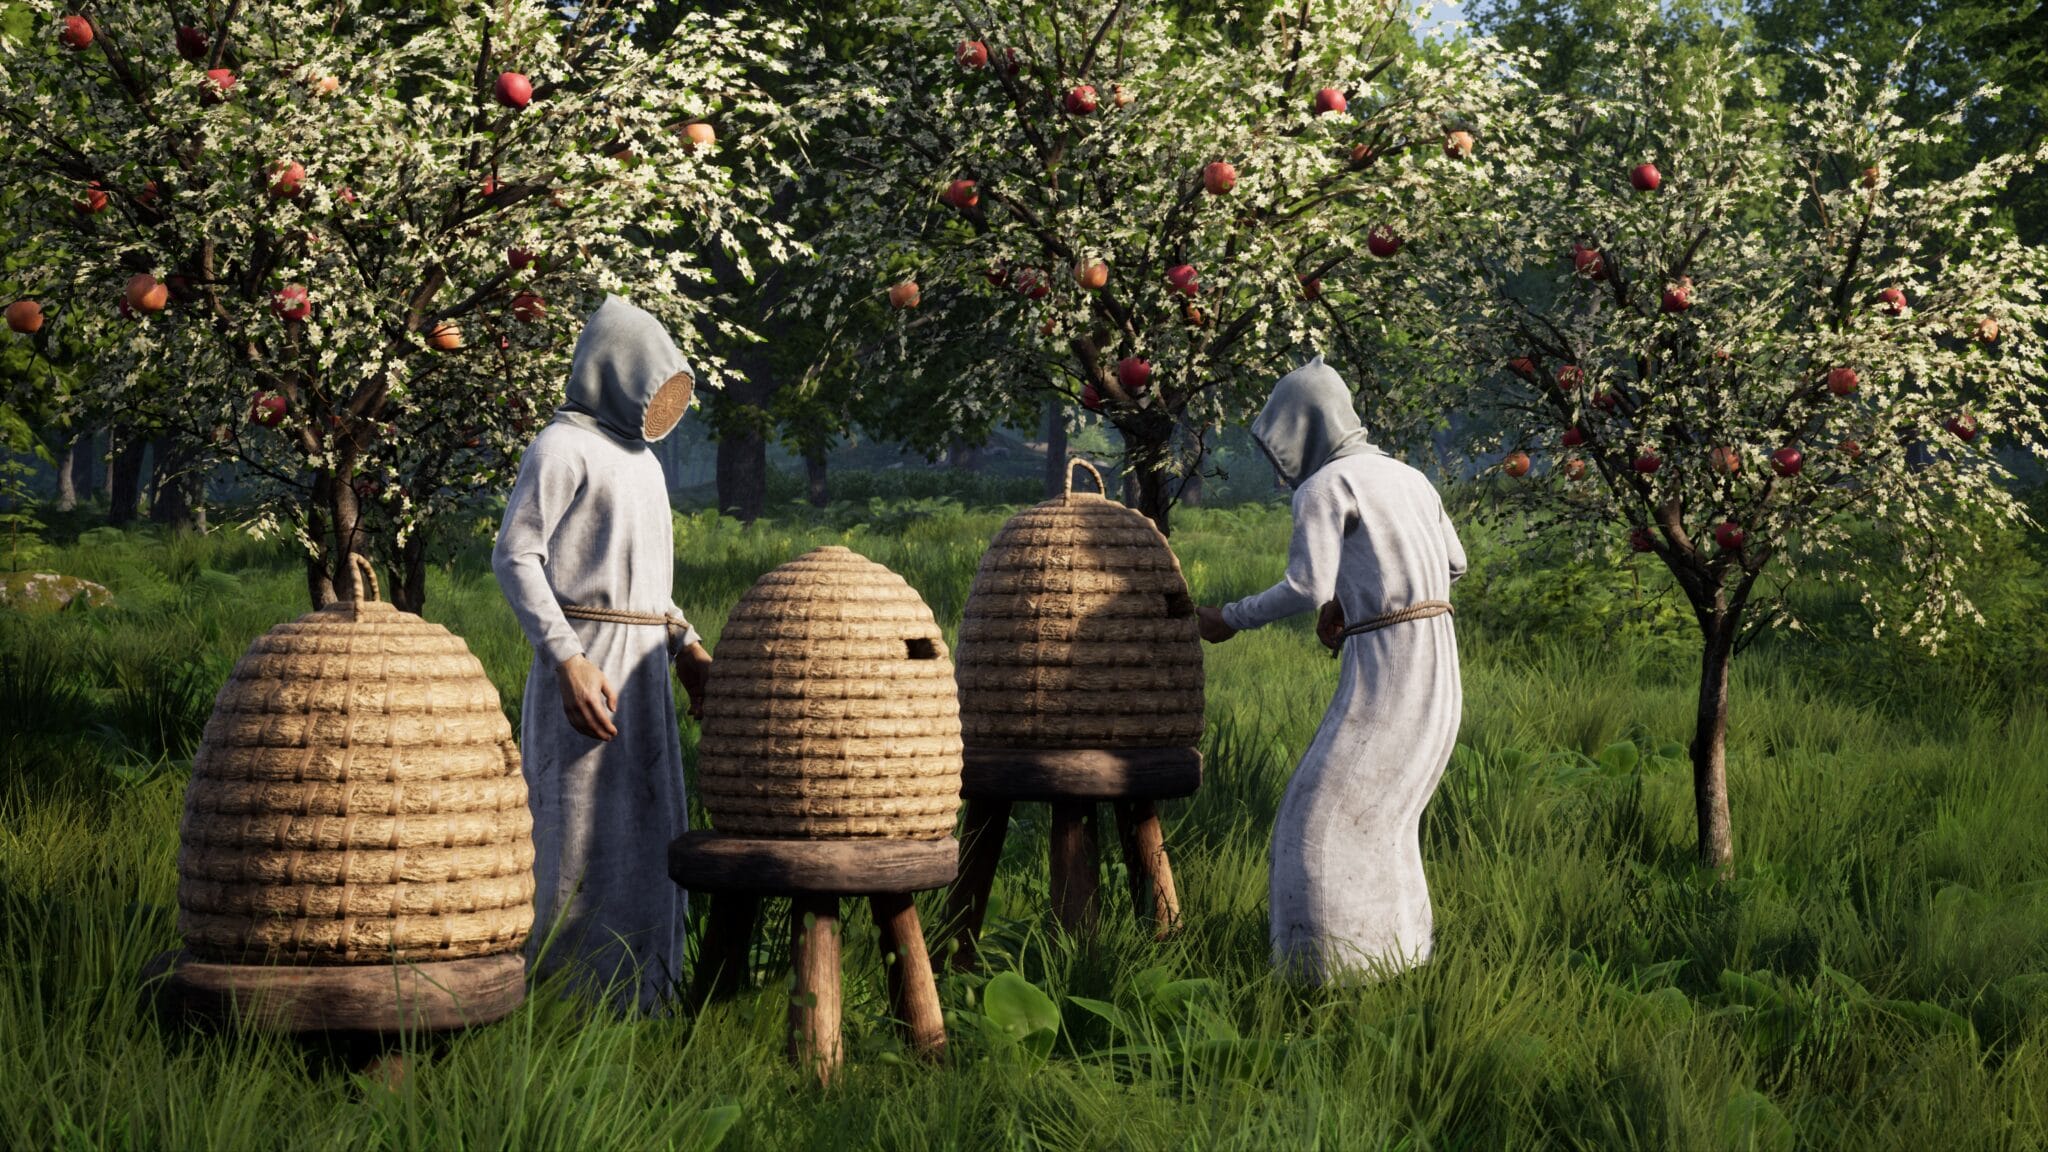 L'une des premières nouveautés était l'apiculture - bien sûr, uniquement avec le bon équipement. Même au Moyen Âge, les piqûres d'abeilles étaient désagréables.